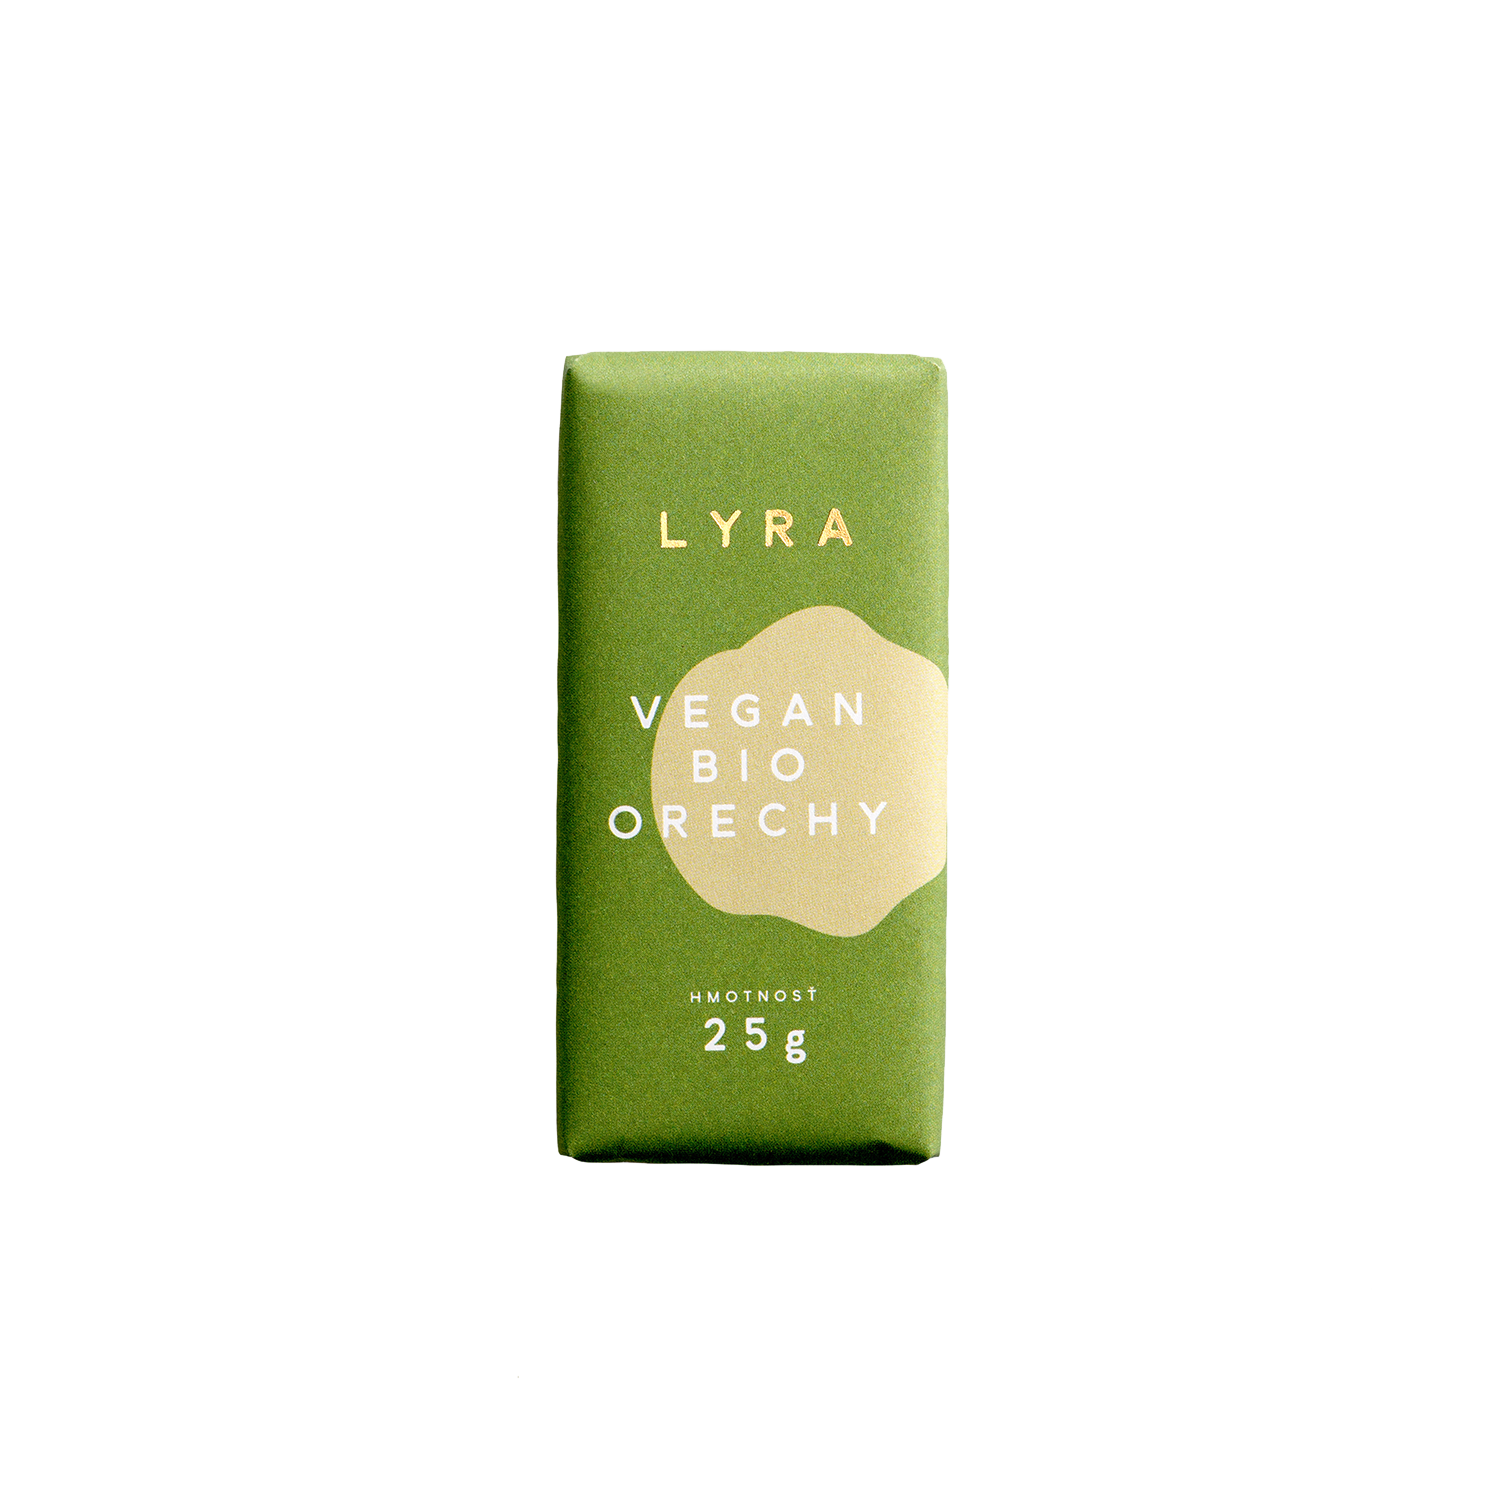 LYRA Chocolate